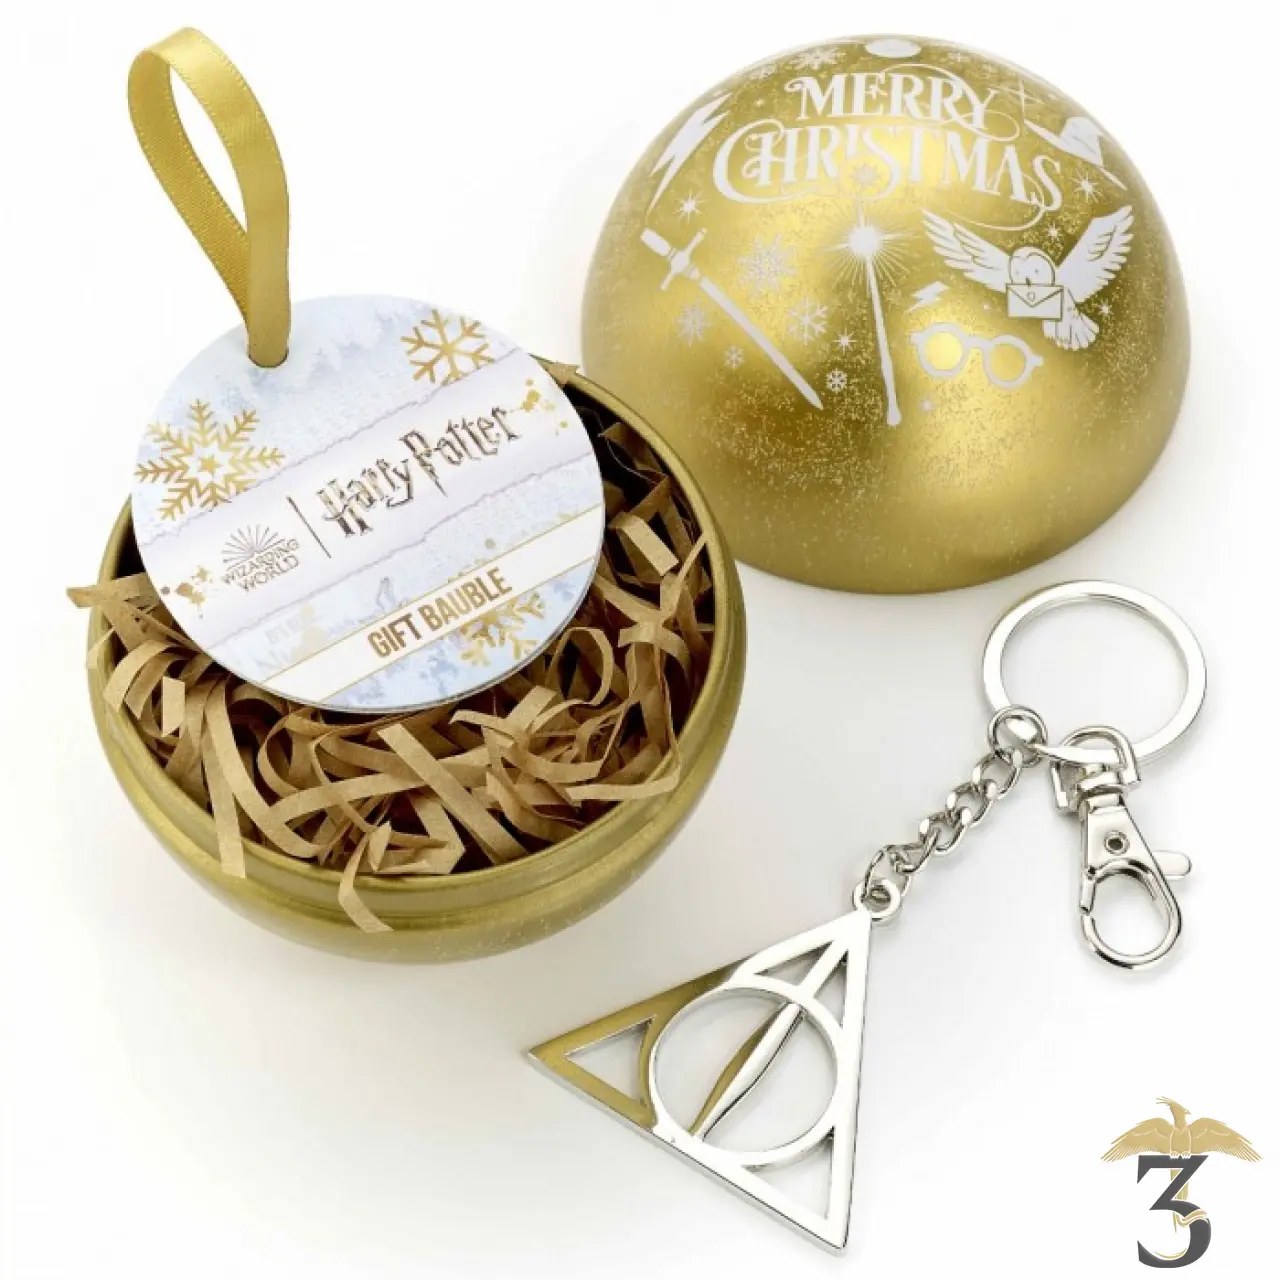 Porte-clés Peluche Harry Potter Quidditch